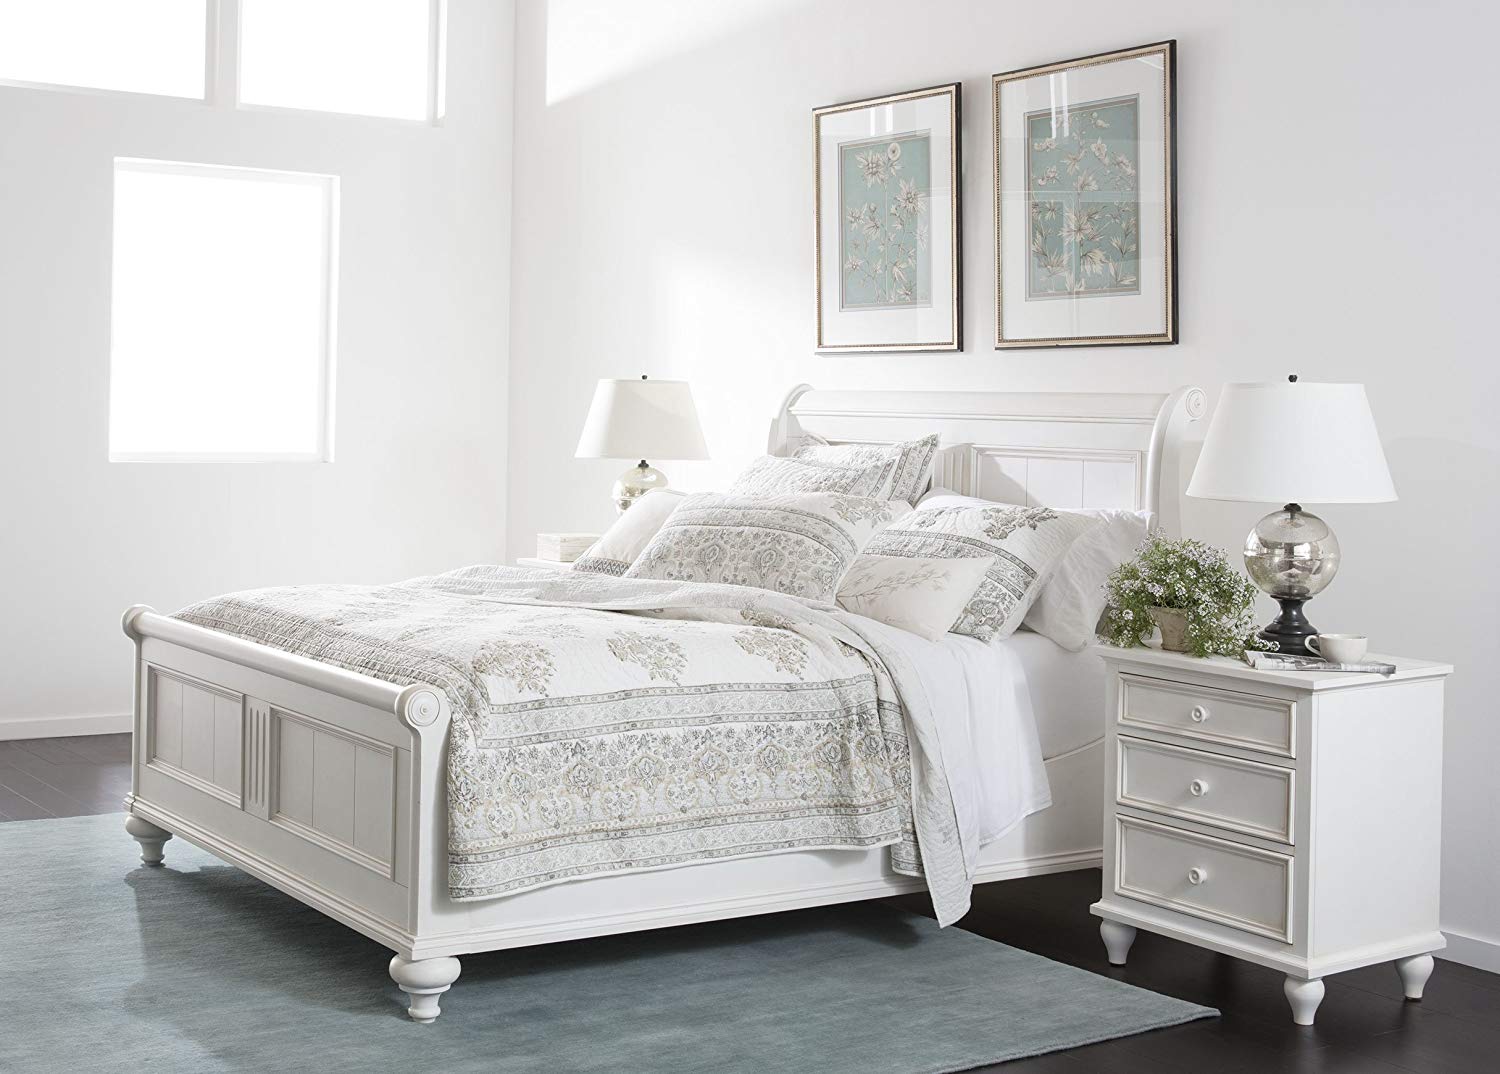 ethan upholstered bedroom furniture